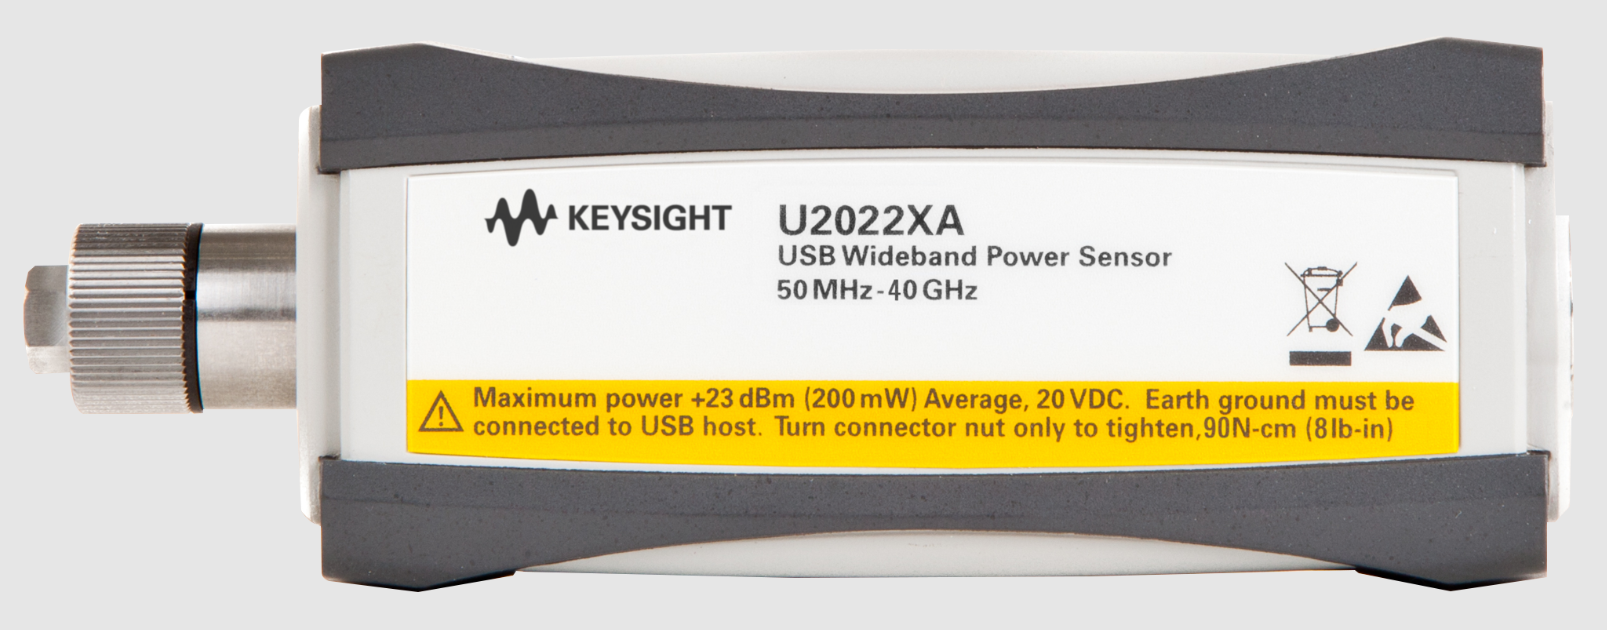 sdkj  U2020 X系列 USB峰值和均值功率传感器